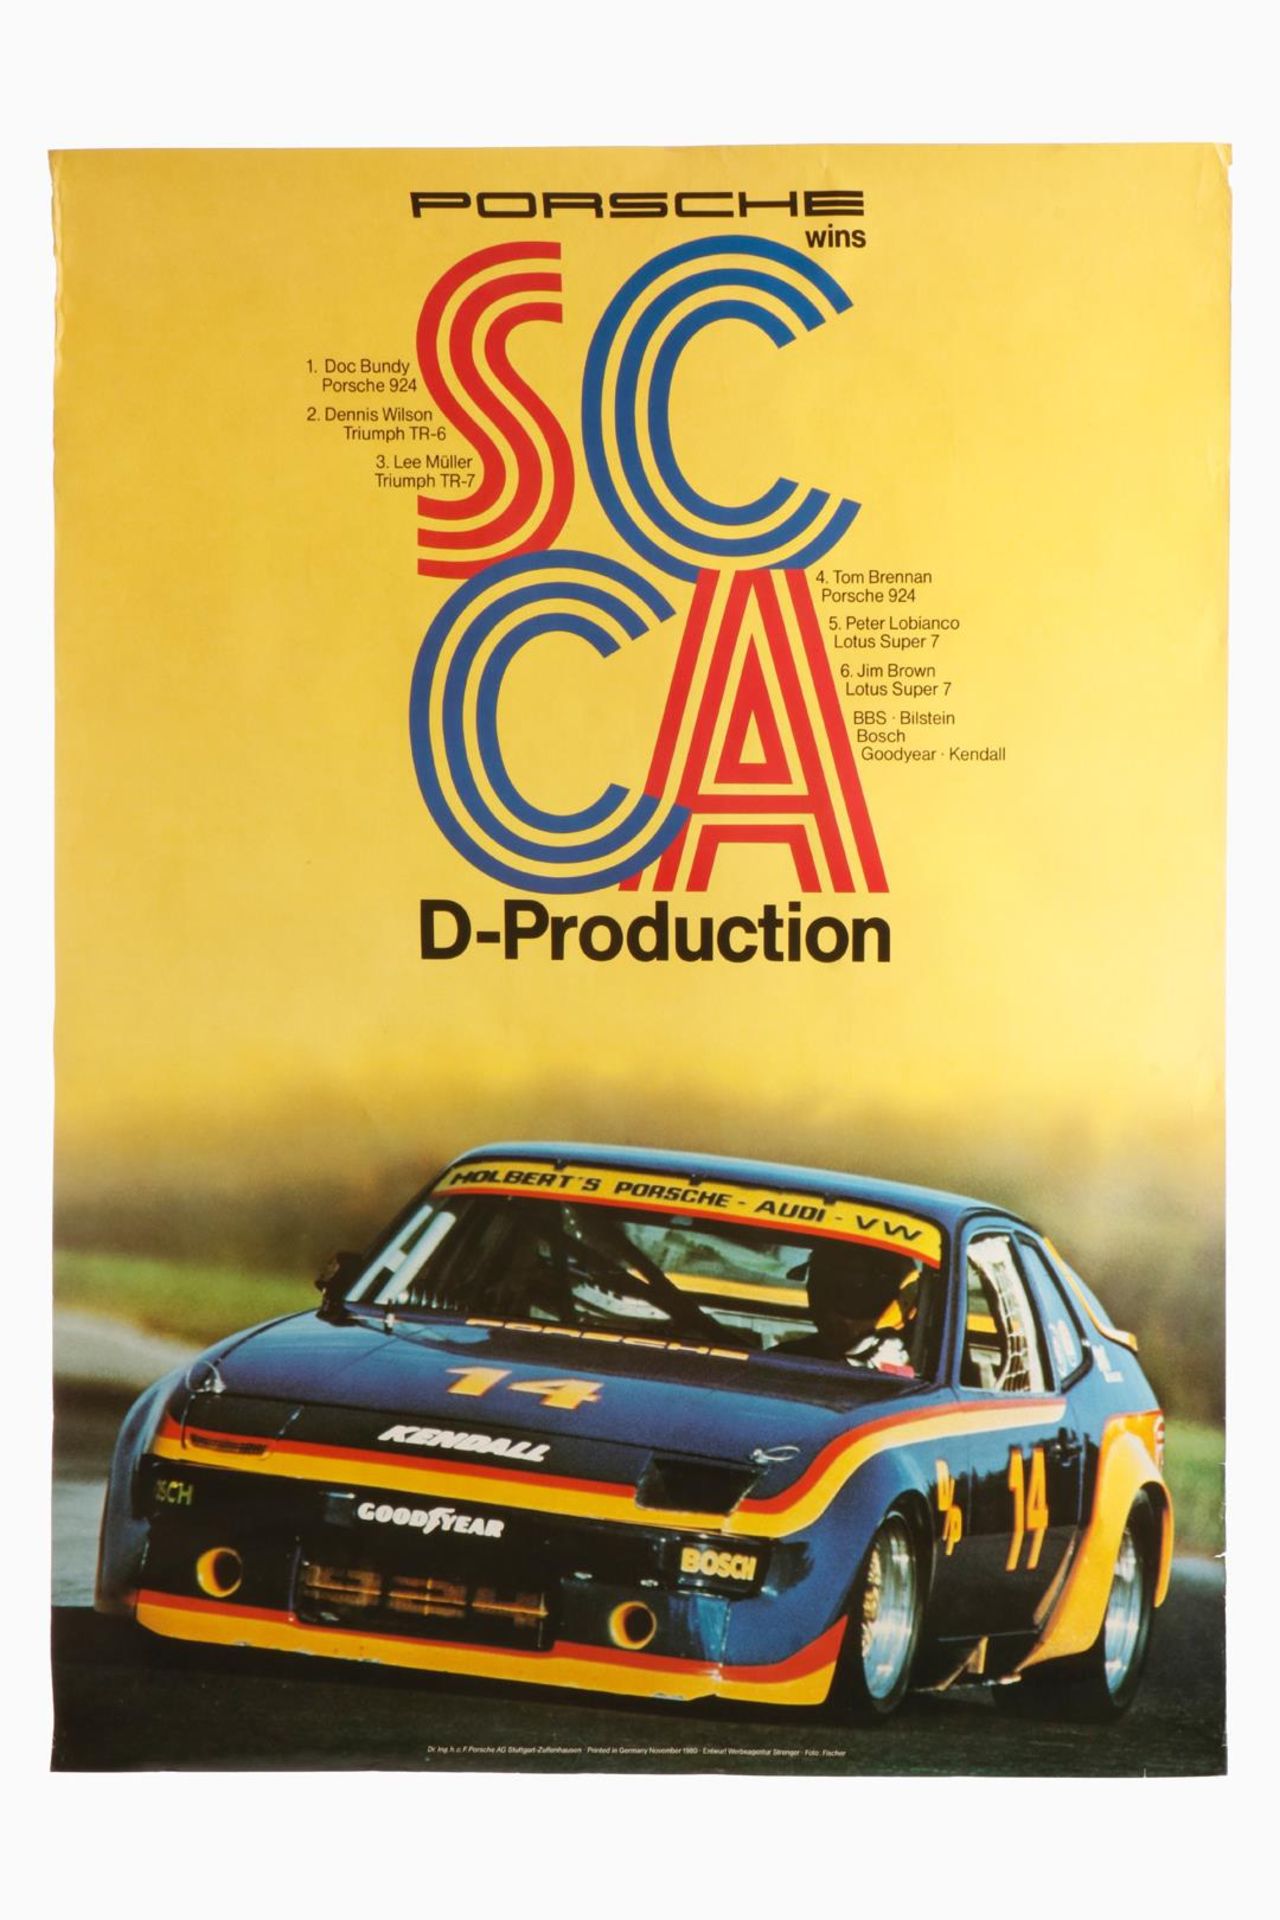 Porsche Plakat ”SCCA D-Production”, Entwurf: Strenger, L 74, H 100